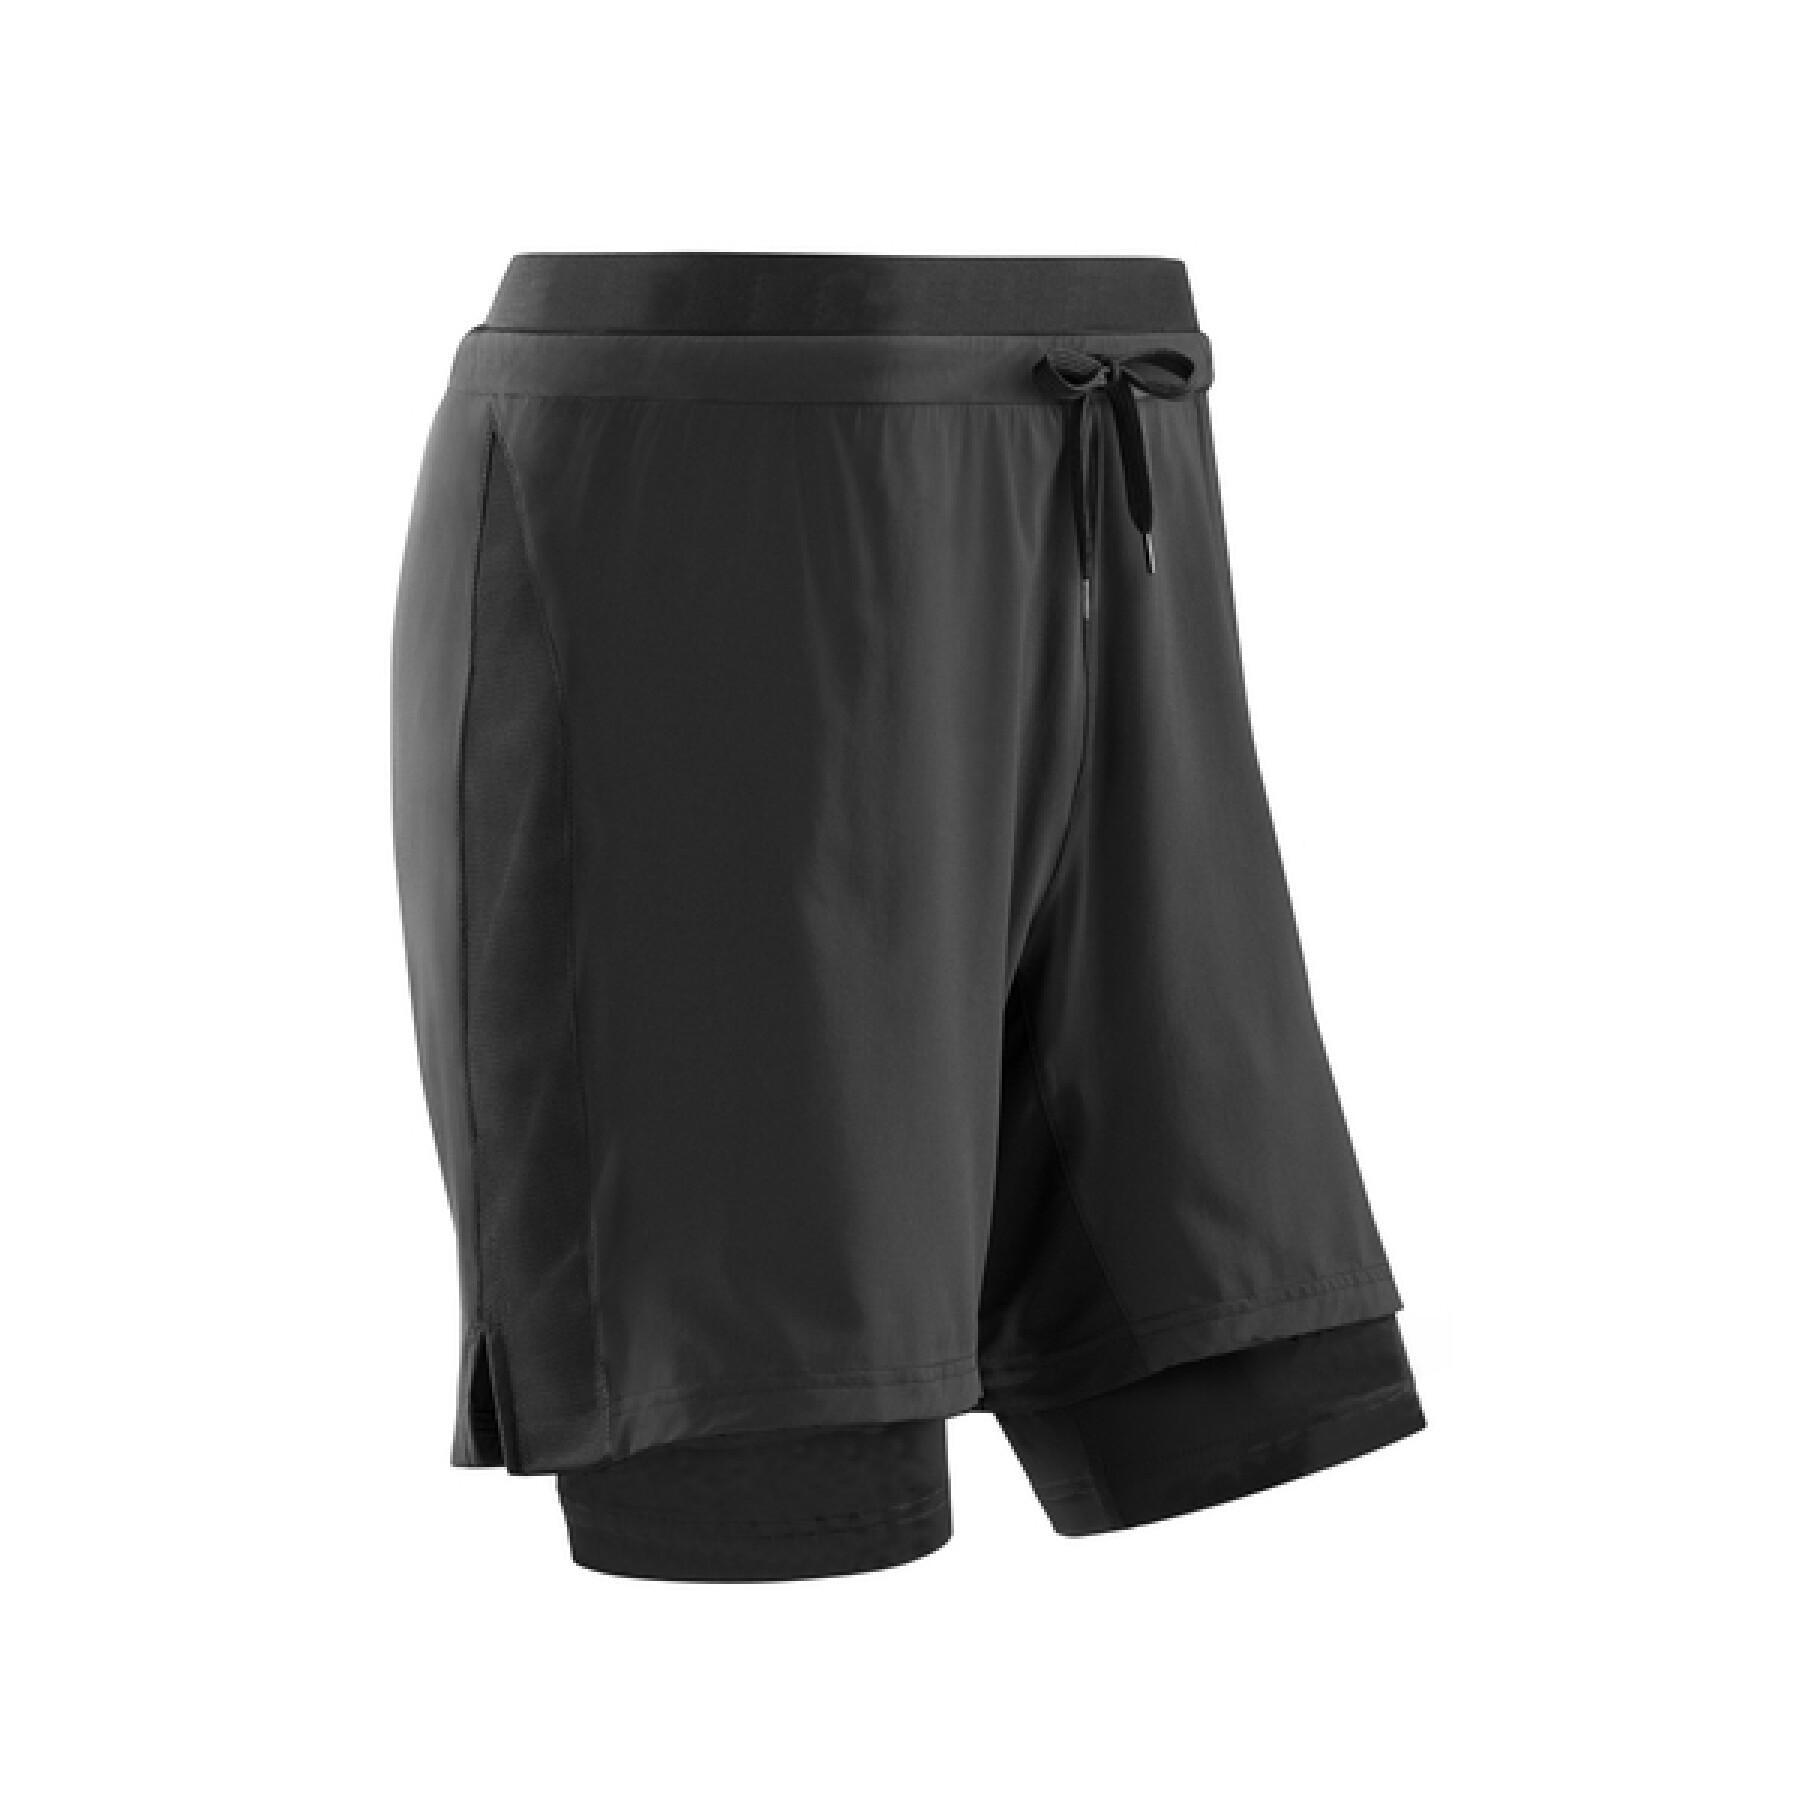 Pantalones cortos 2en1 CEP Compression Training